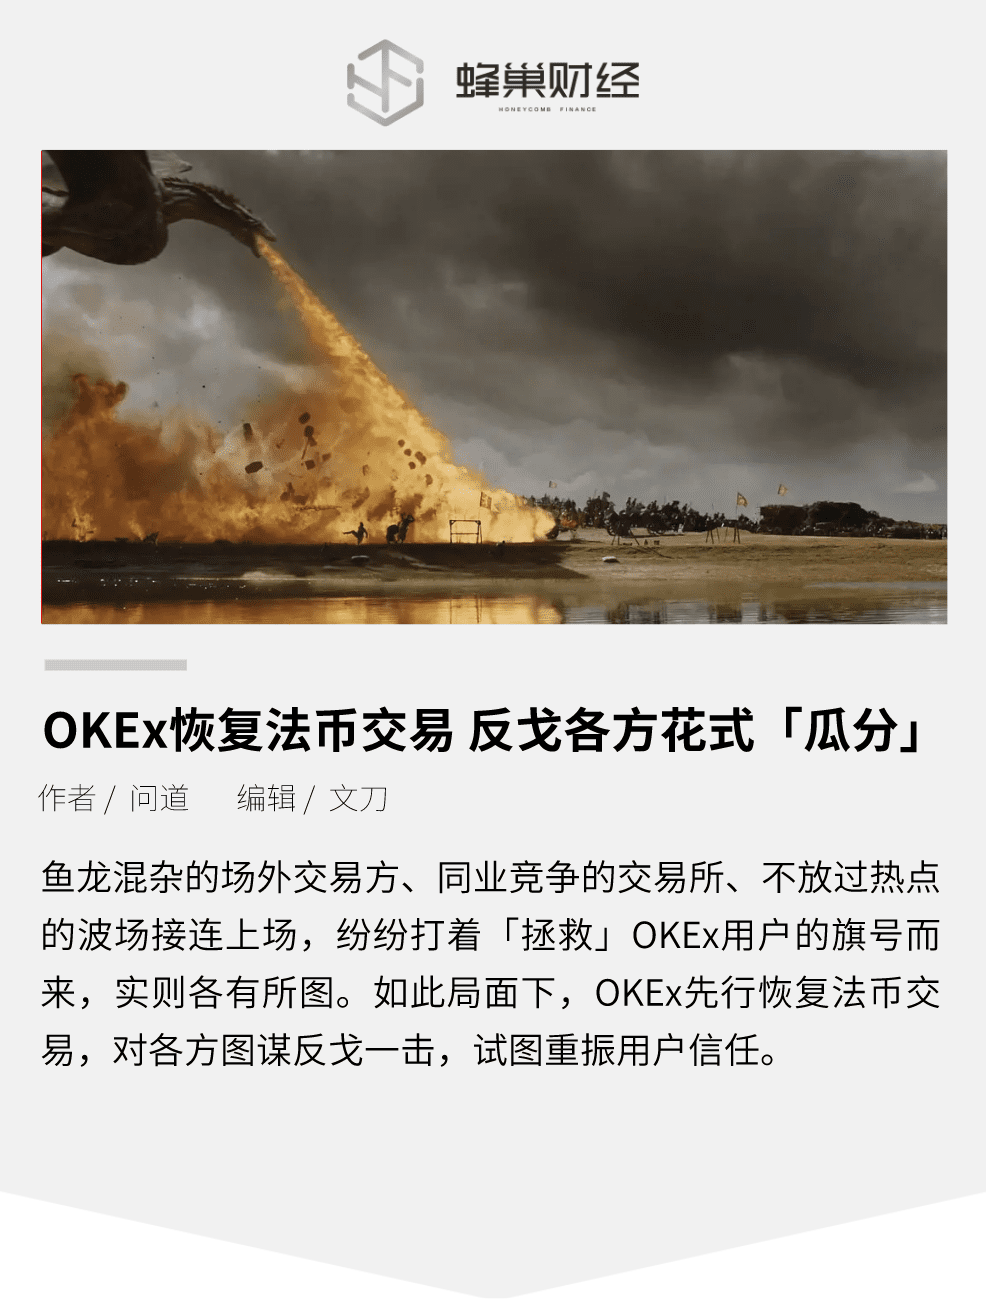 OKEx恢复法币交易 反戈各方花式「瓜分」